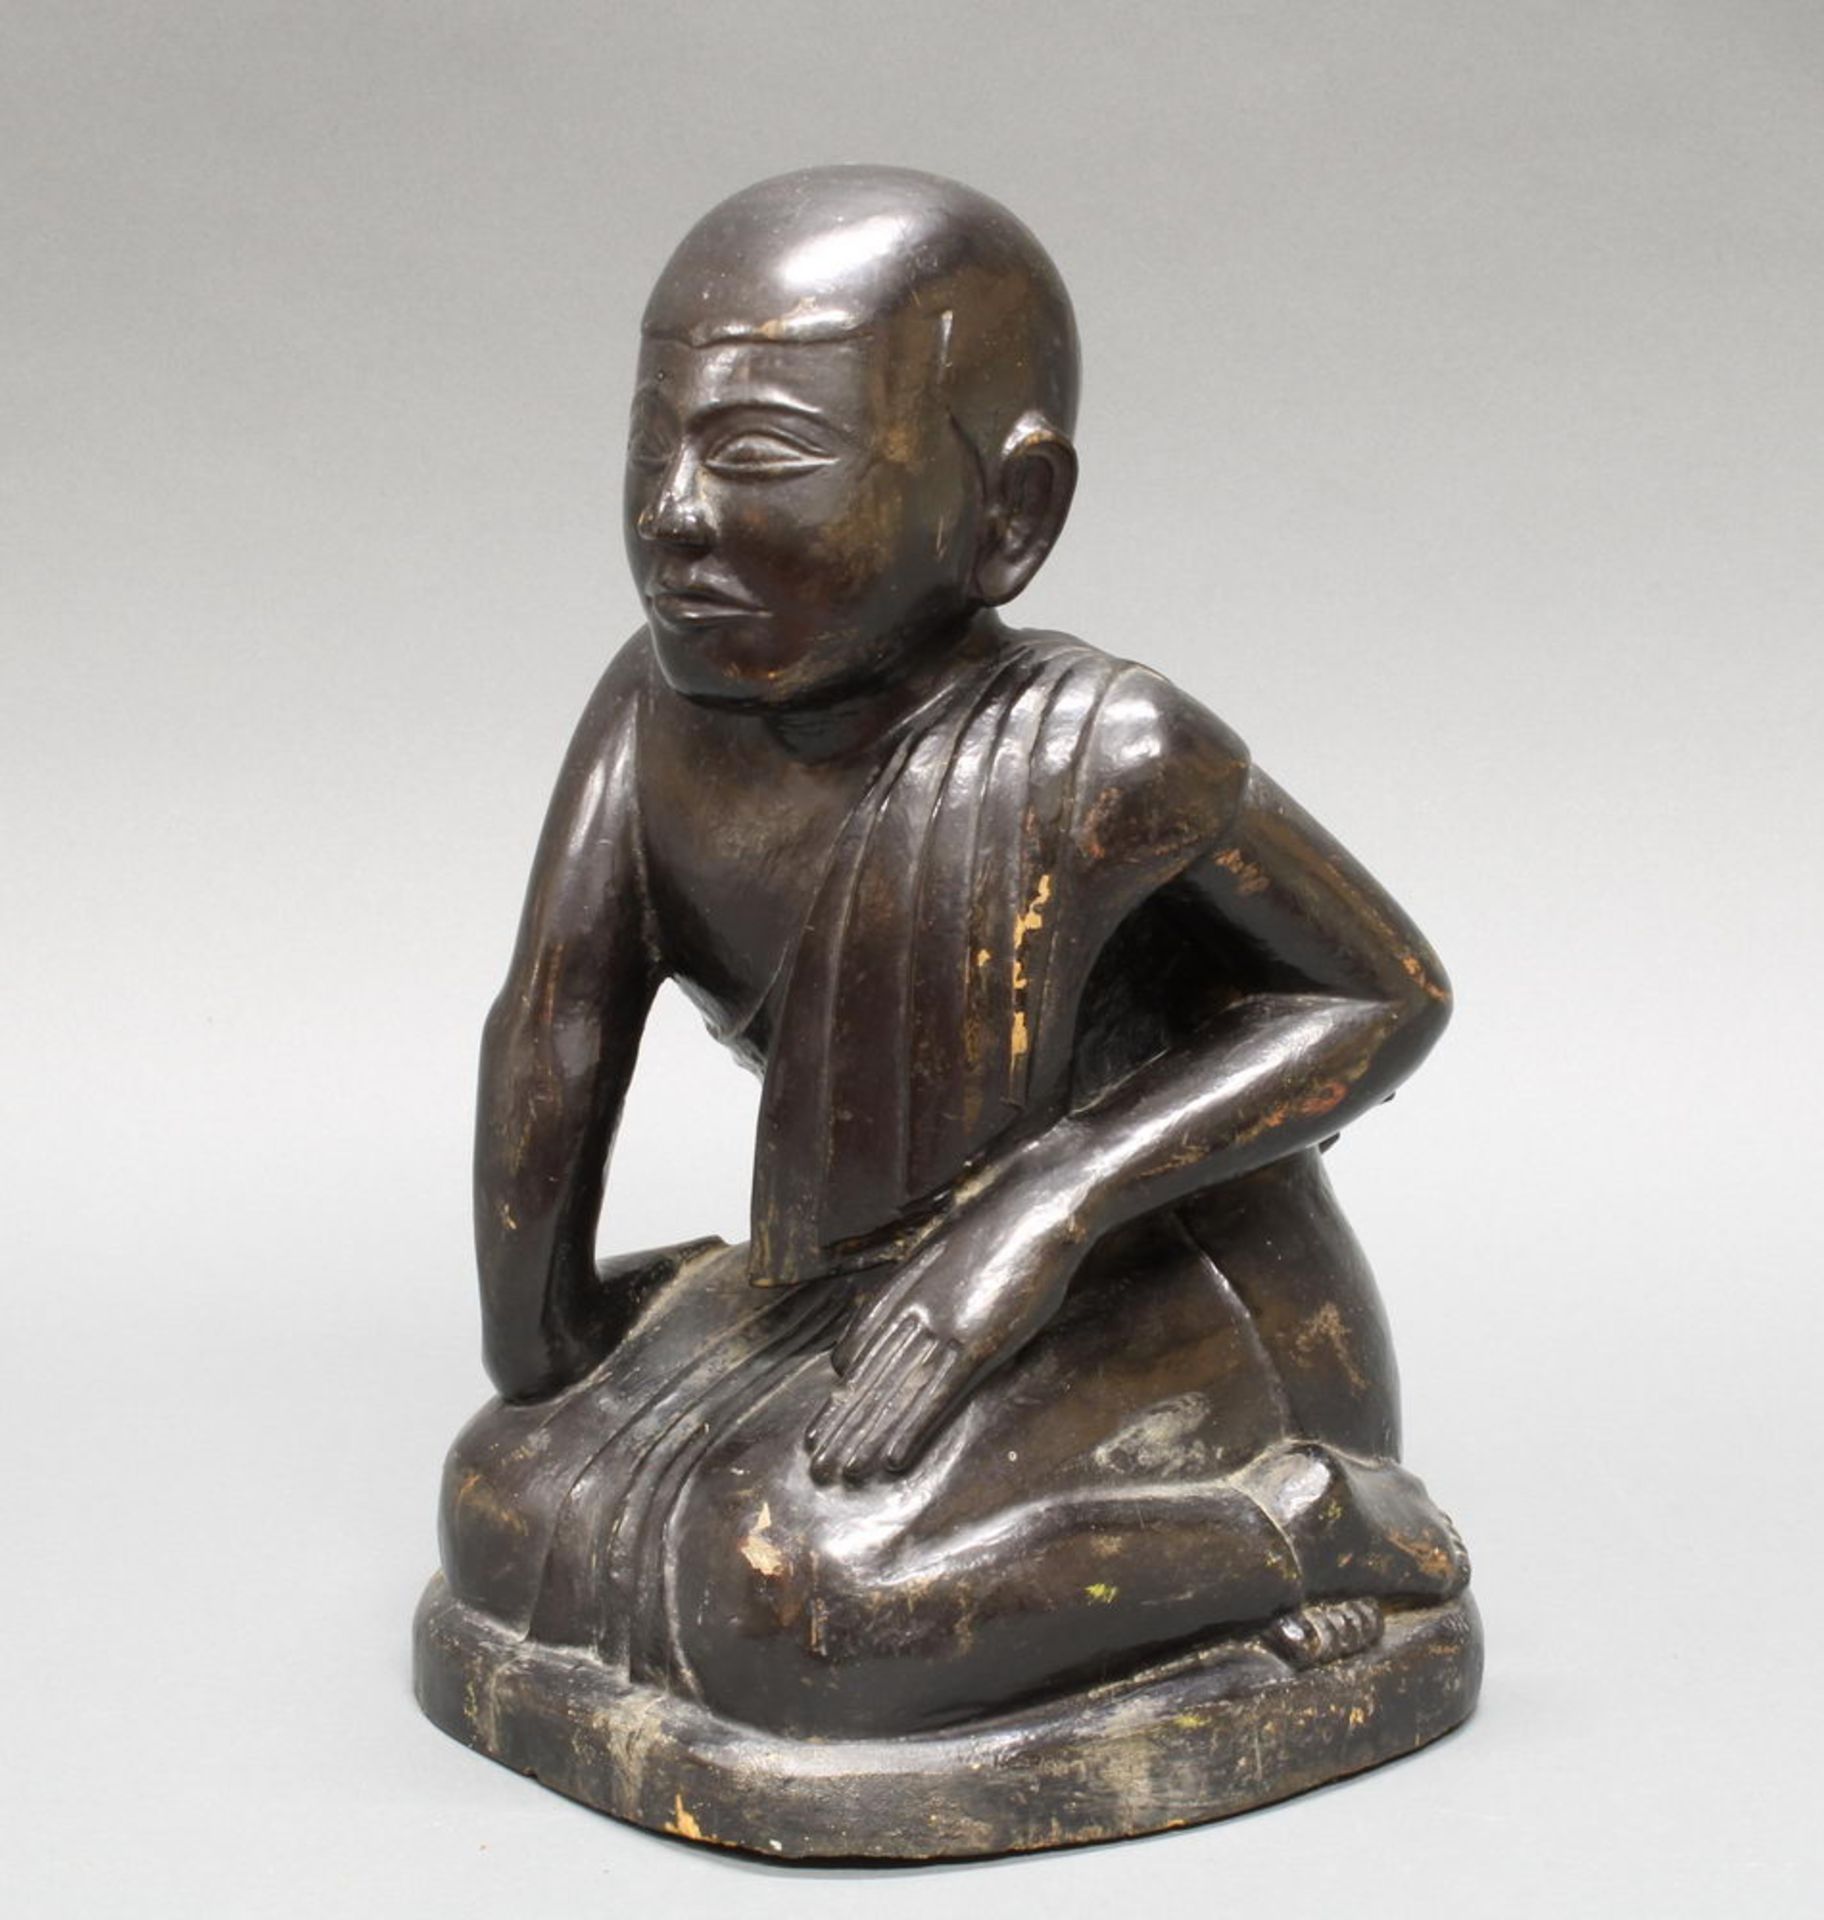 Figur, "Kniender Mönch", Burma, 19./20. Jh., Holz, schwarz lackiert, 35 cm hoch